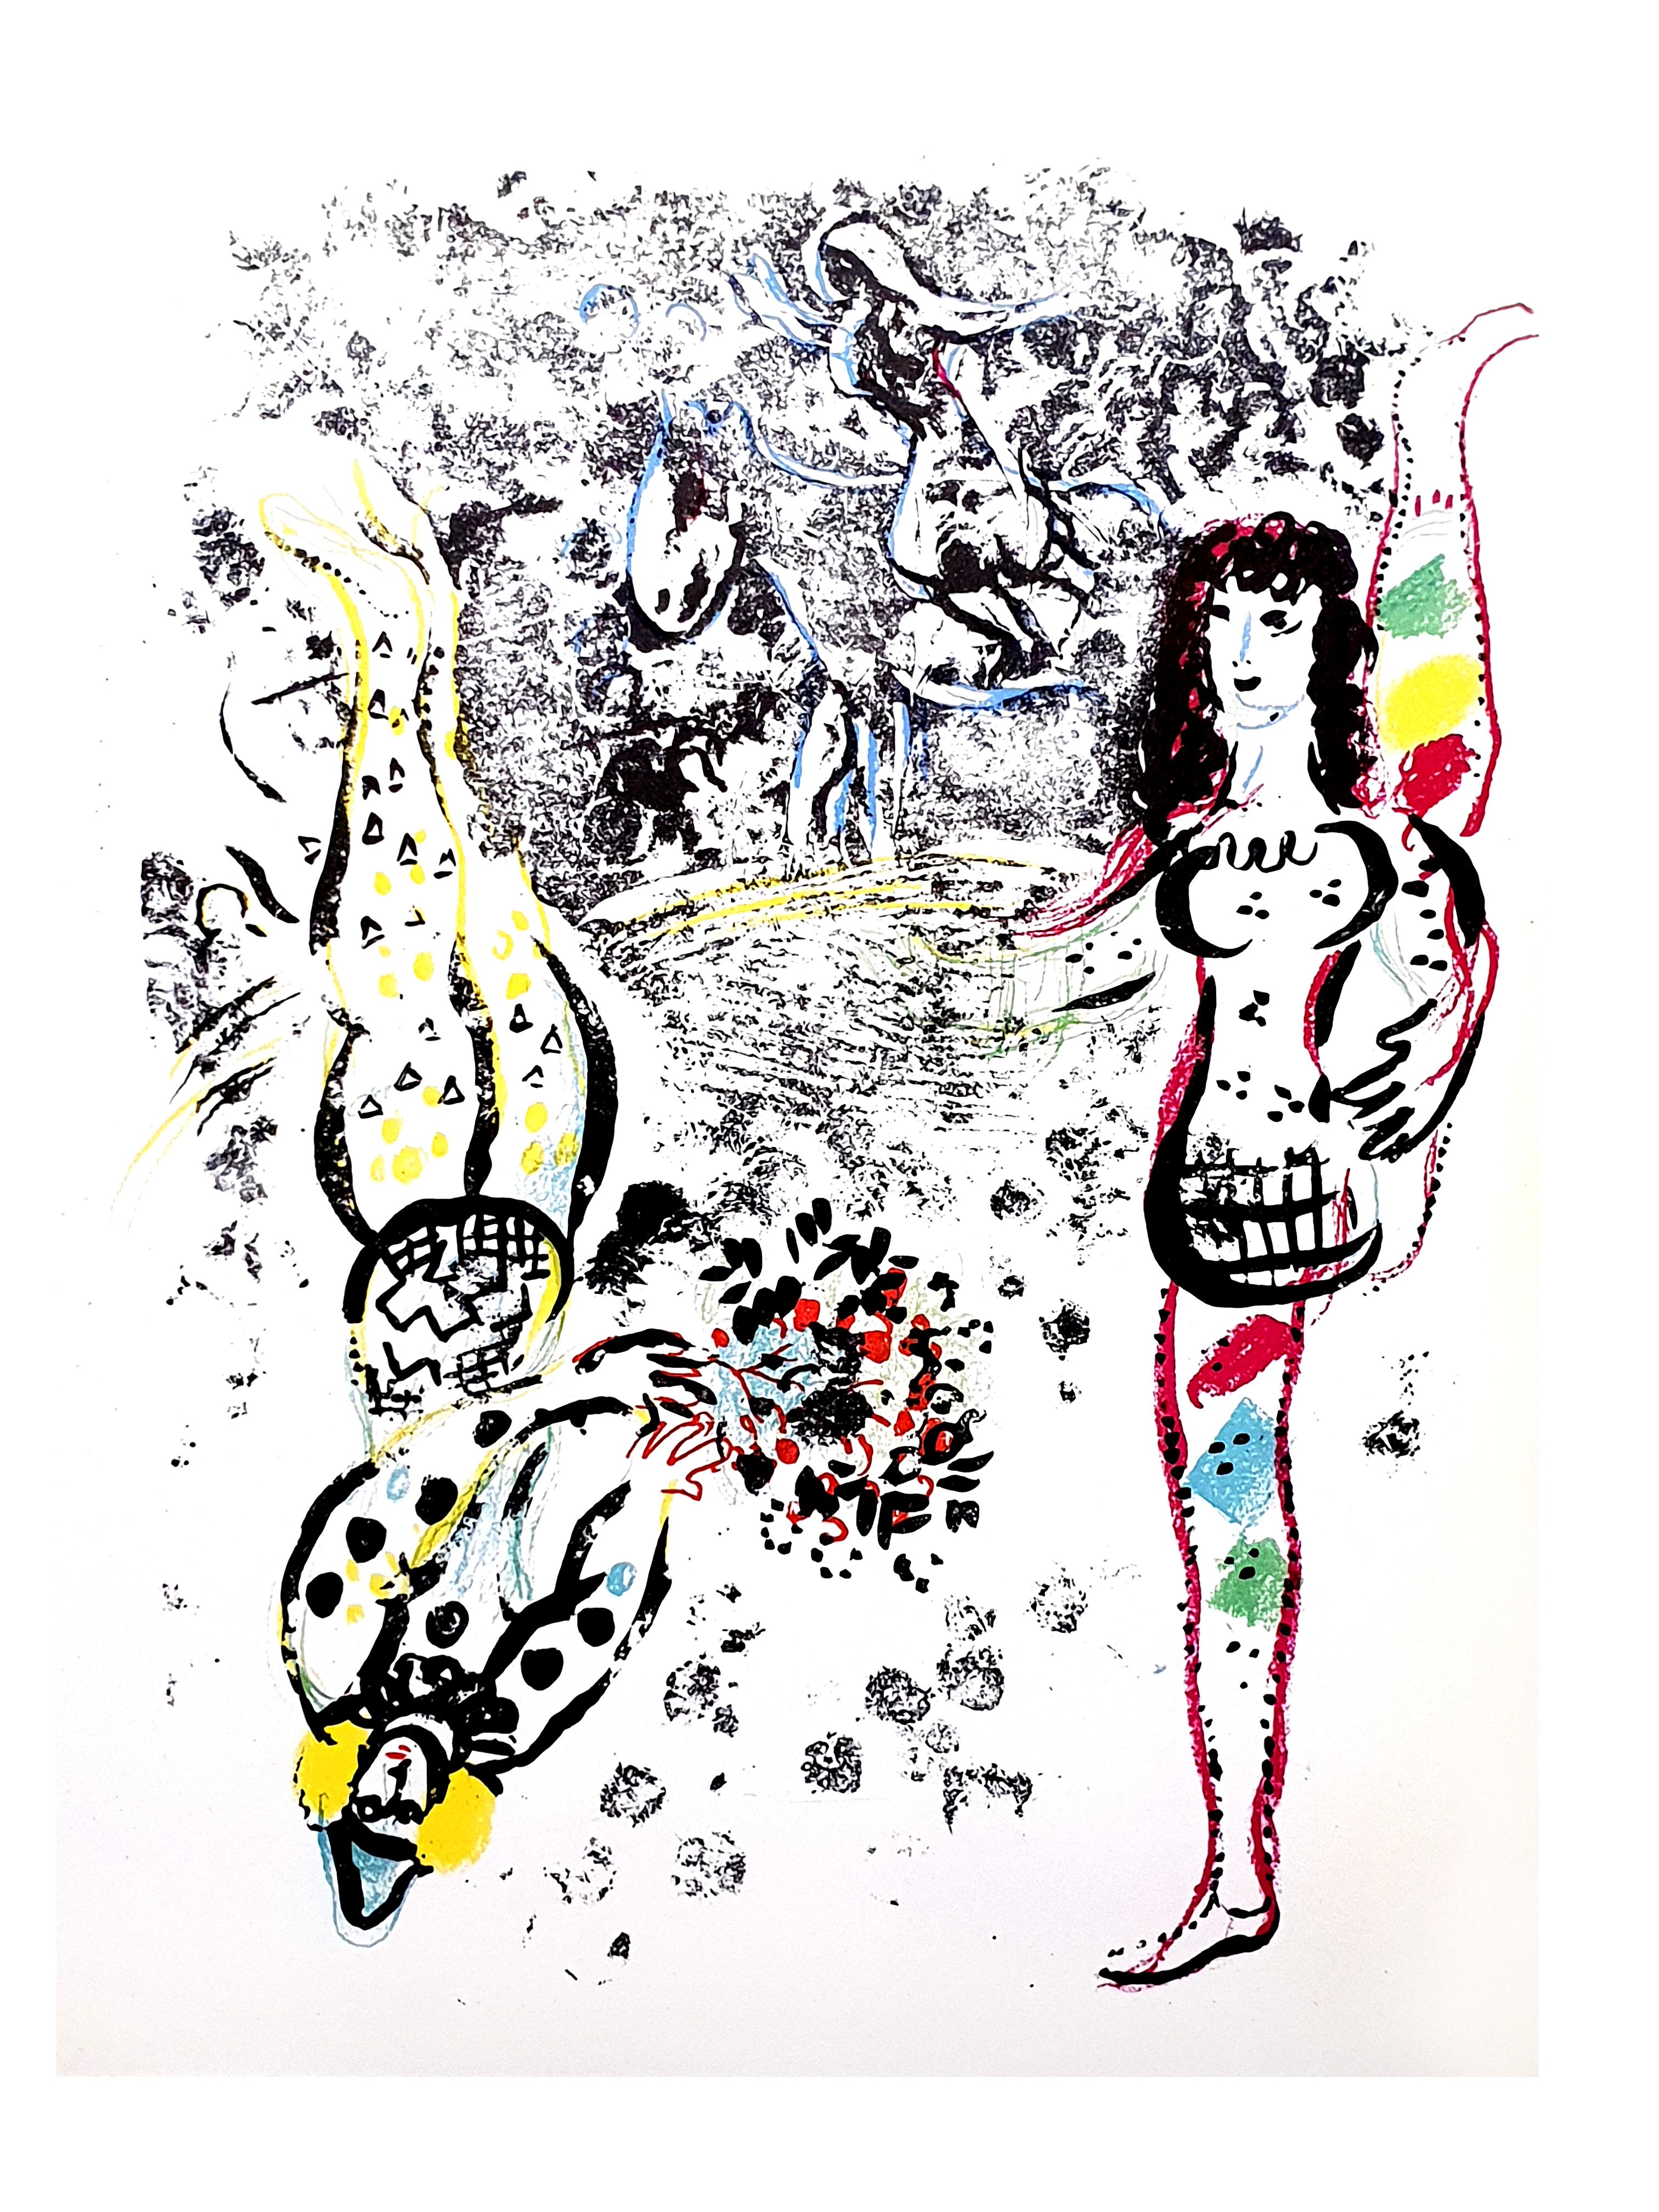 Marc Chagall
Original-Lithographie
1963
Abmessungen: 32 x 24 cm
Wie veröffentlicht in Chagall Lithographe 1957-1962. VOLUME II.
Unsigniert, wie ausgegeben, aus der Auflage von mehreren Tausend
Zustand: Ausgezeichnet
Referenz: Mourlot/Gauss 401

Marc